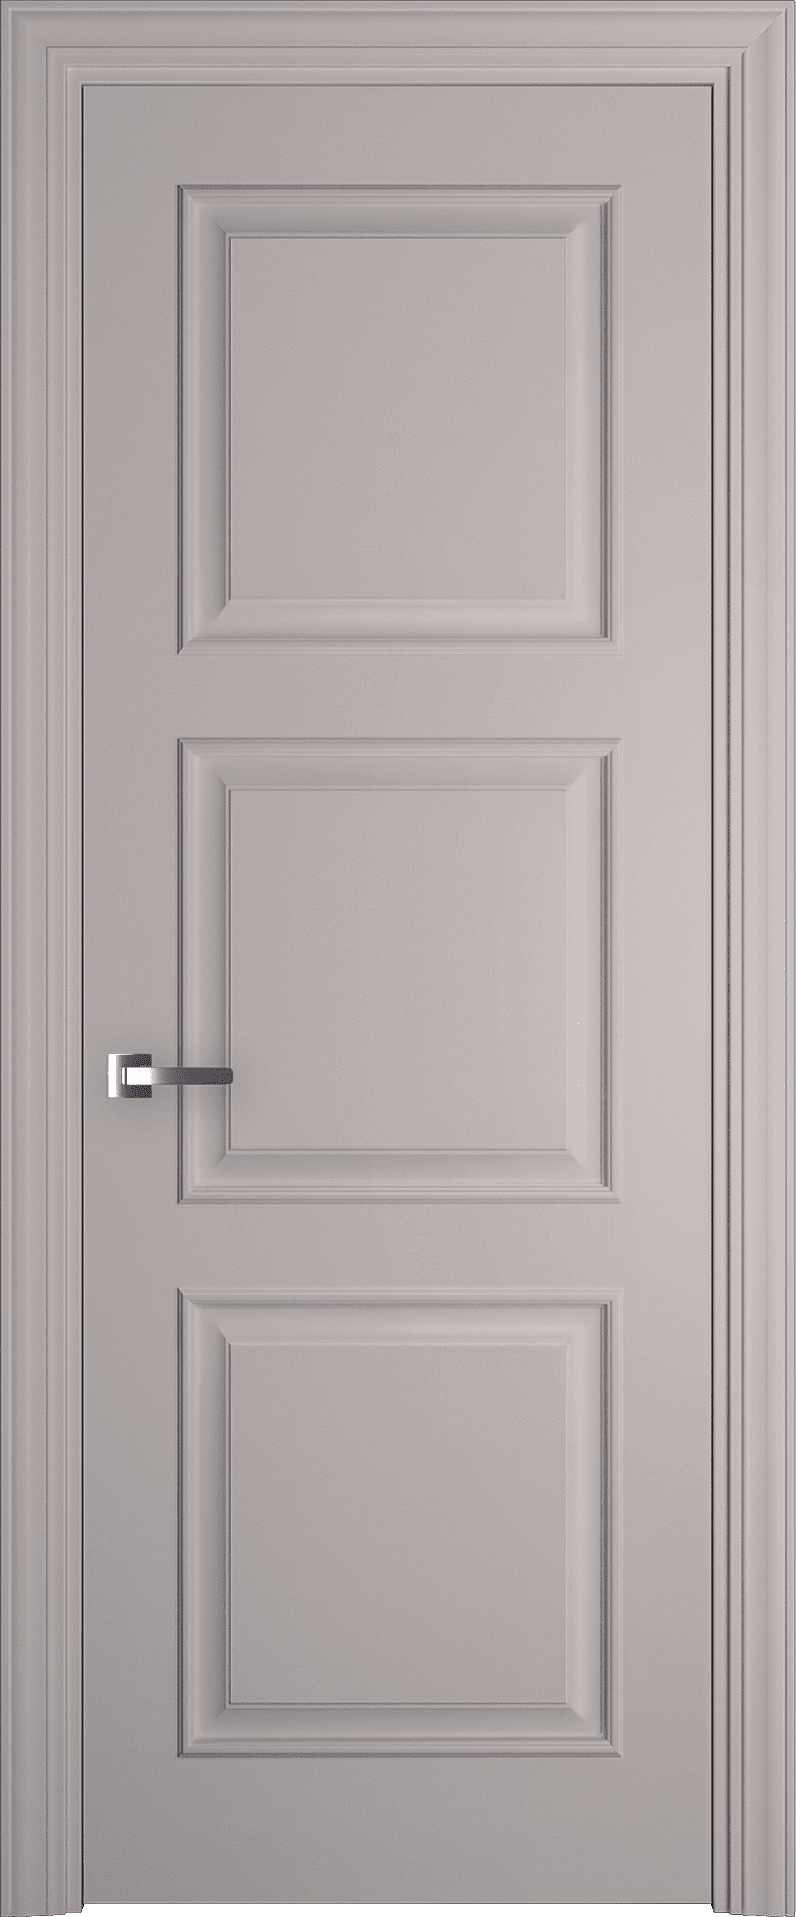 Межкомнатная дверь Трио багет 1